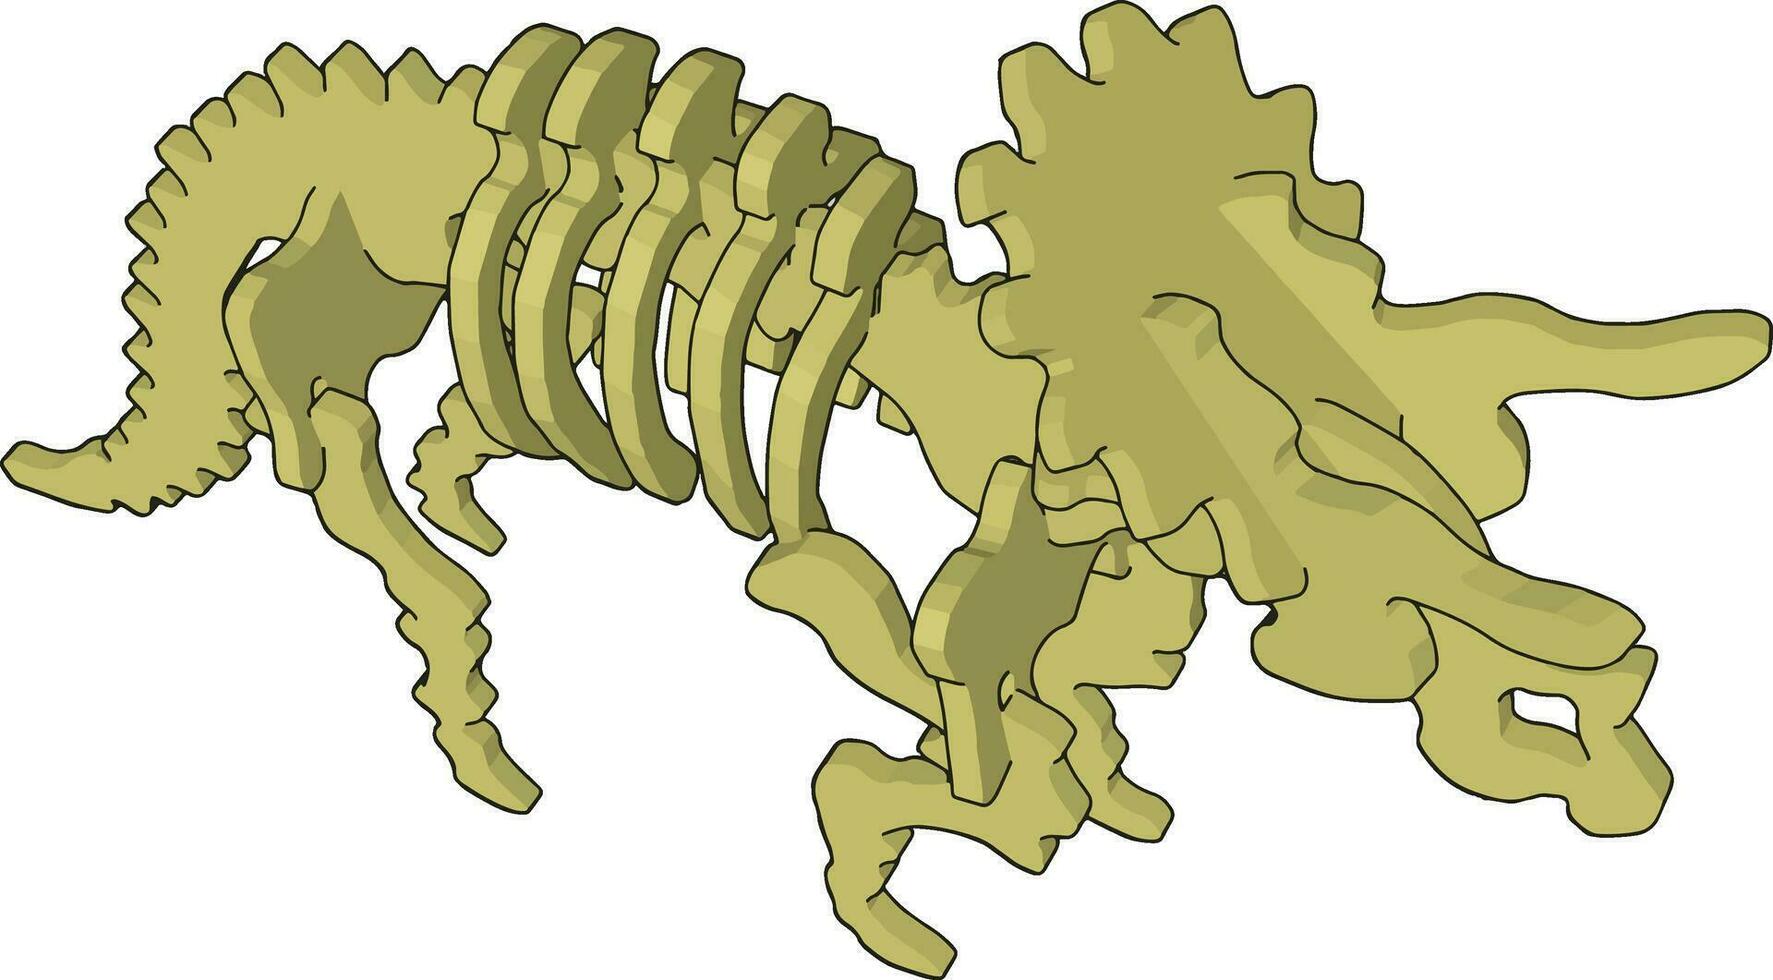 Esqueleto de dinossauro 3D, ilustração, vetor em fundo branco.